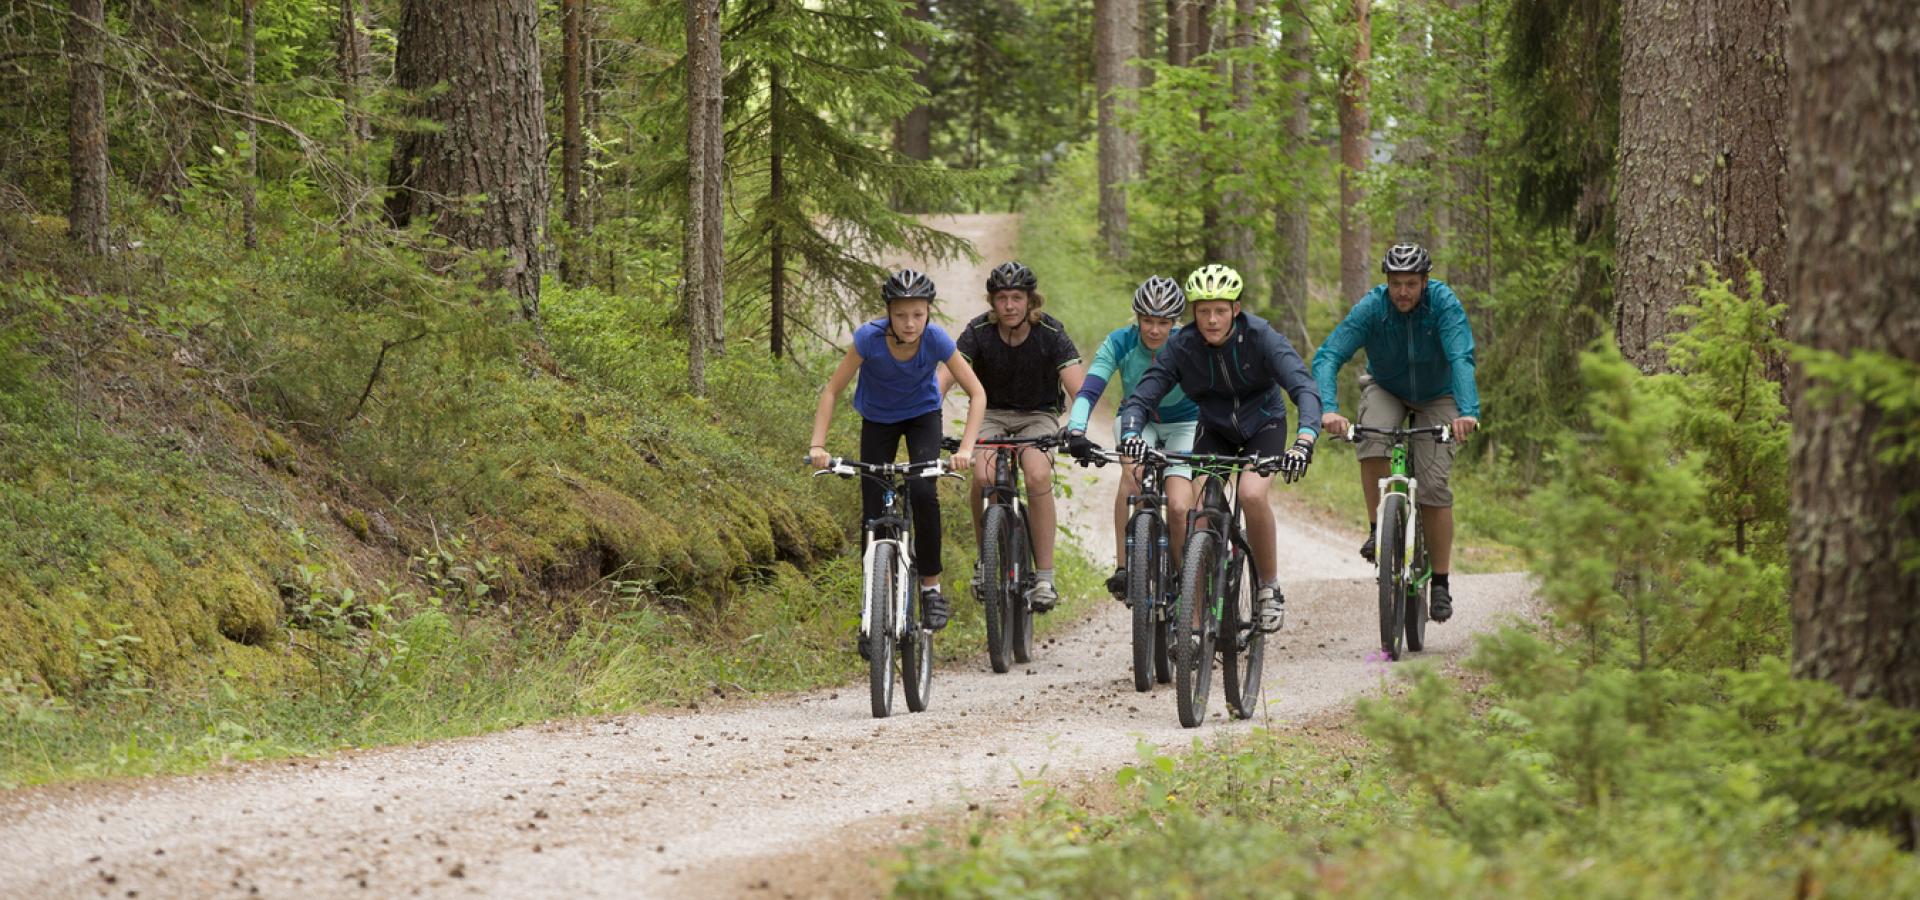 Familj cyklar i skogen.